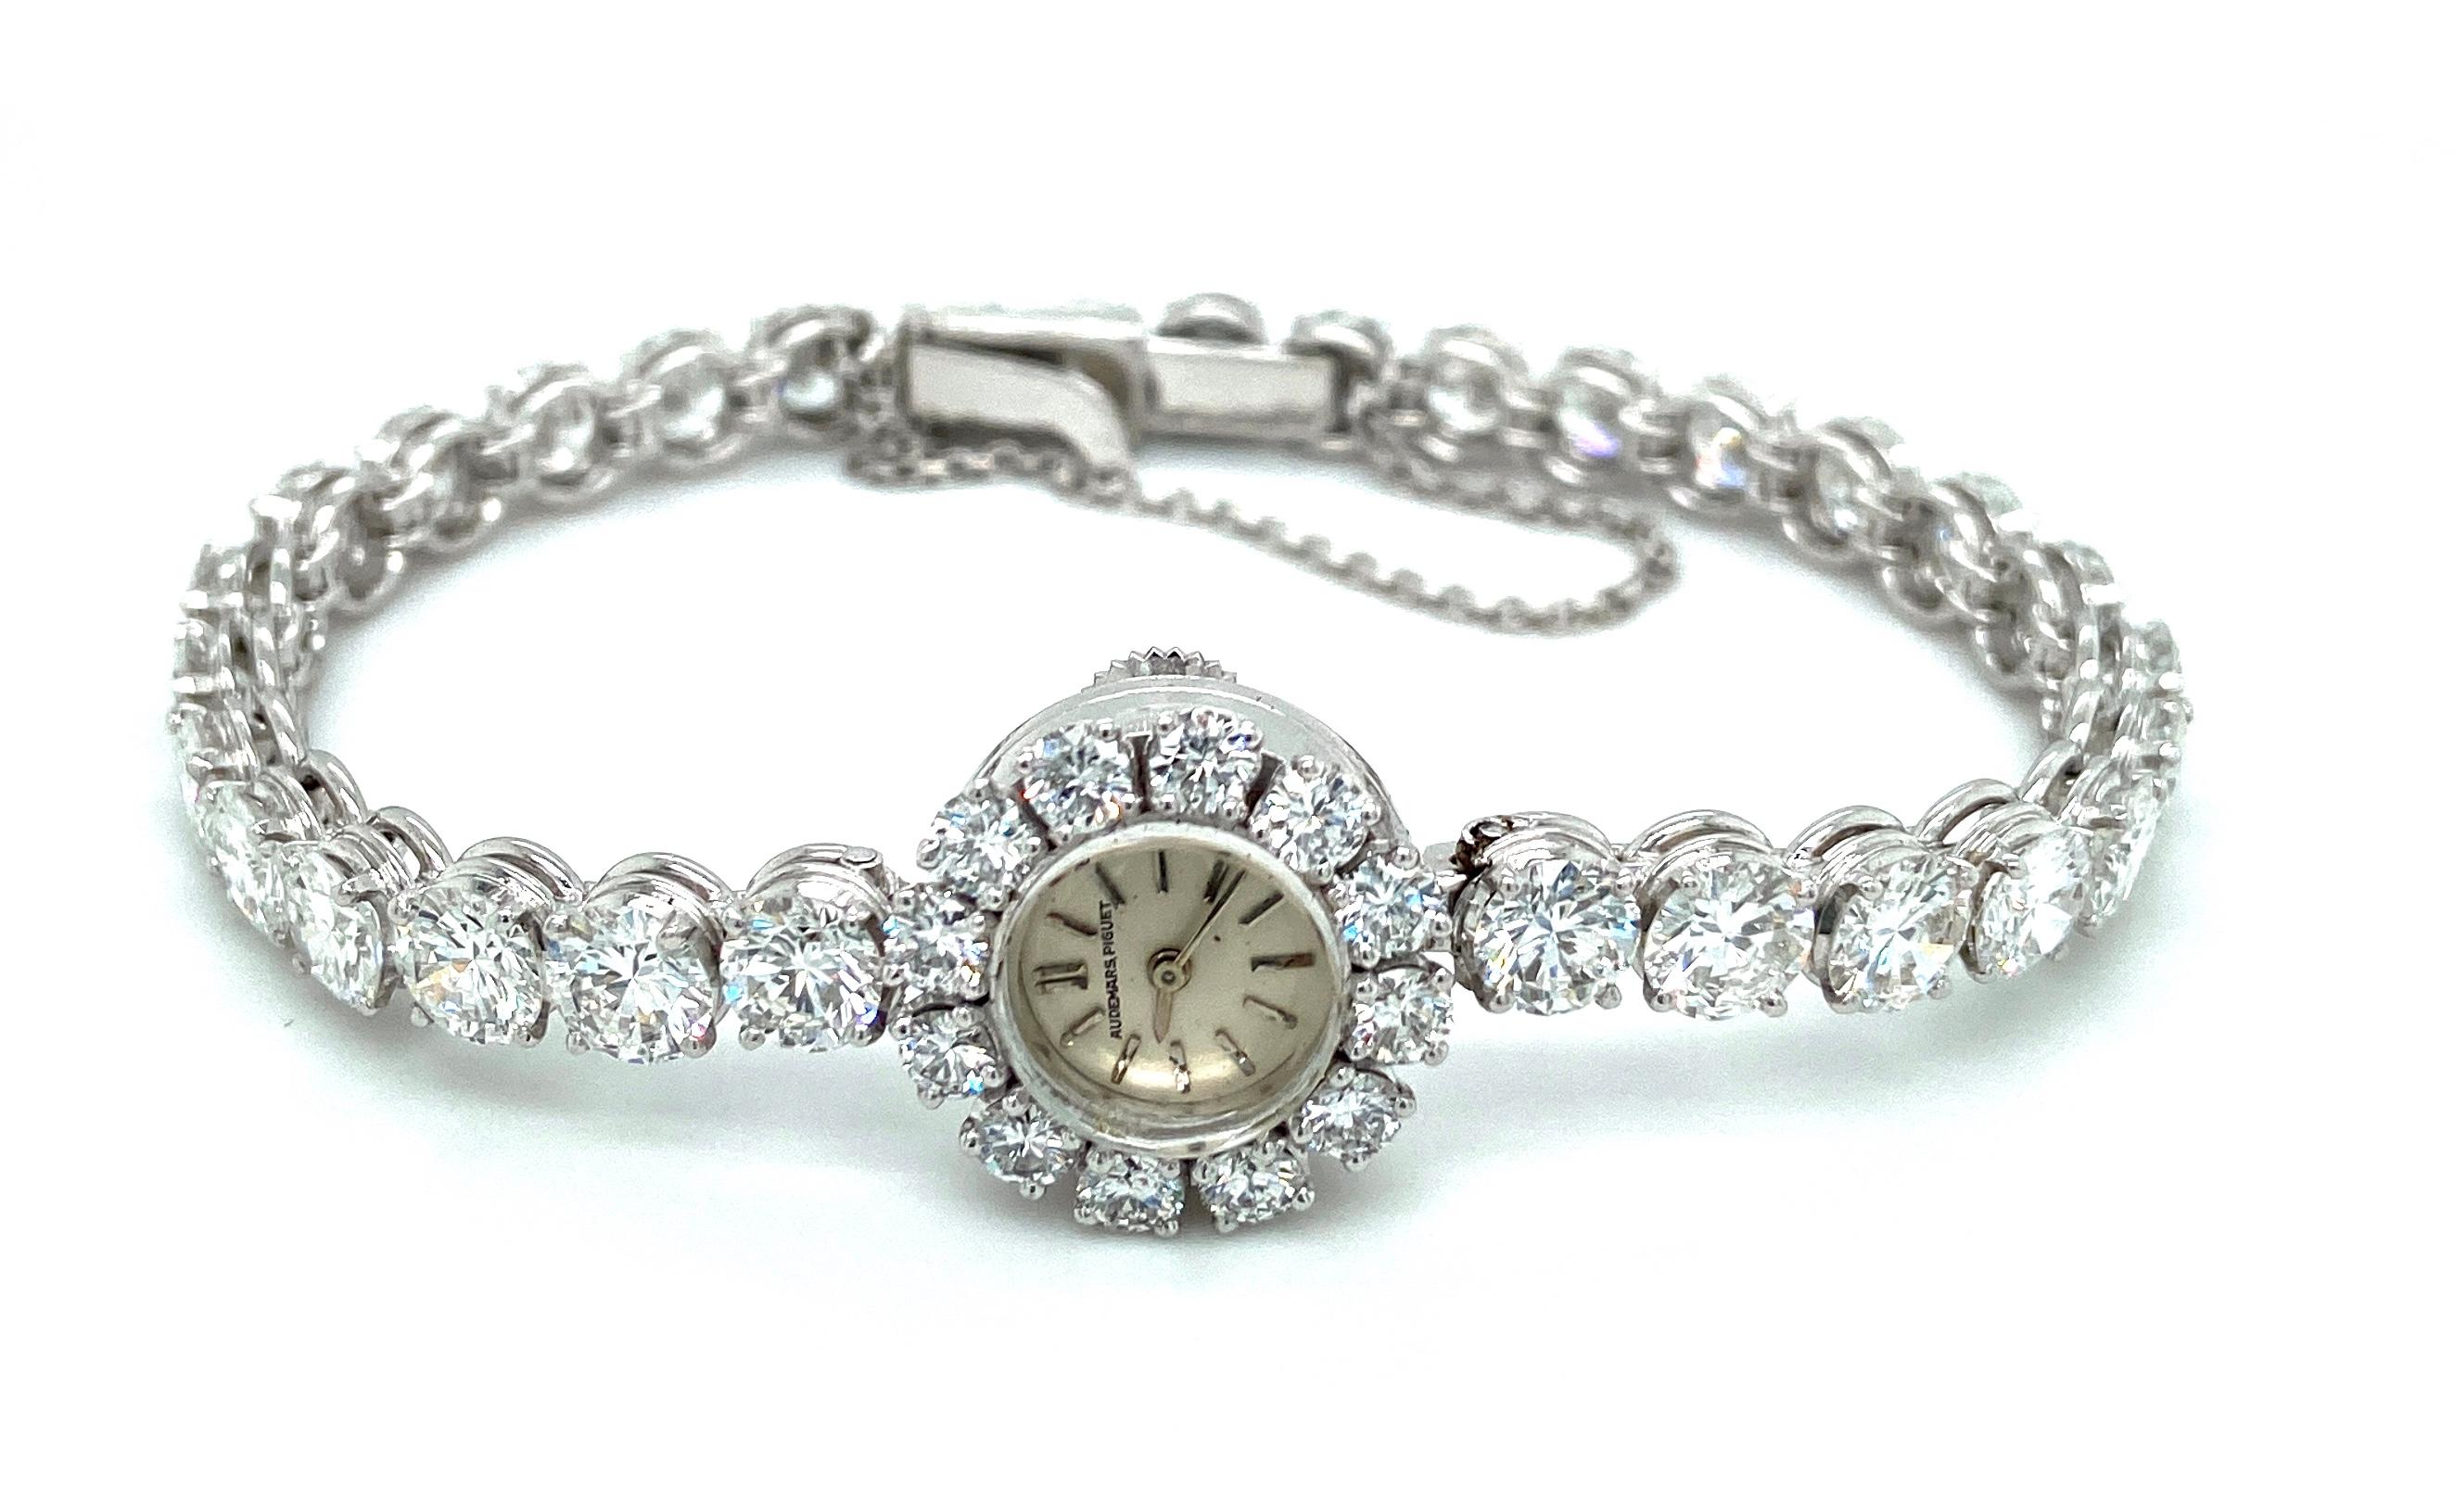 StunningHigh Yewellery Bracelet de tennis en platine / montre  Audemars Piguet.

Calibre : 2426

Diamants : Le bracelet contient 16,2 carats de diamants. D couleur intérieurement irréprochable

Matériau : Platine

Boîtier : Platine, diamètre, 15,4